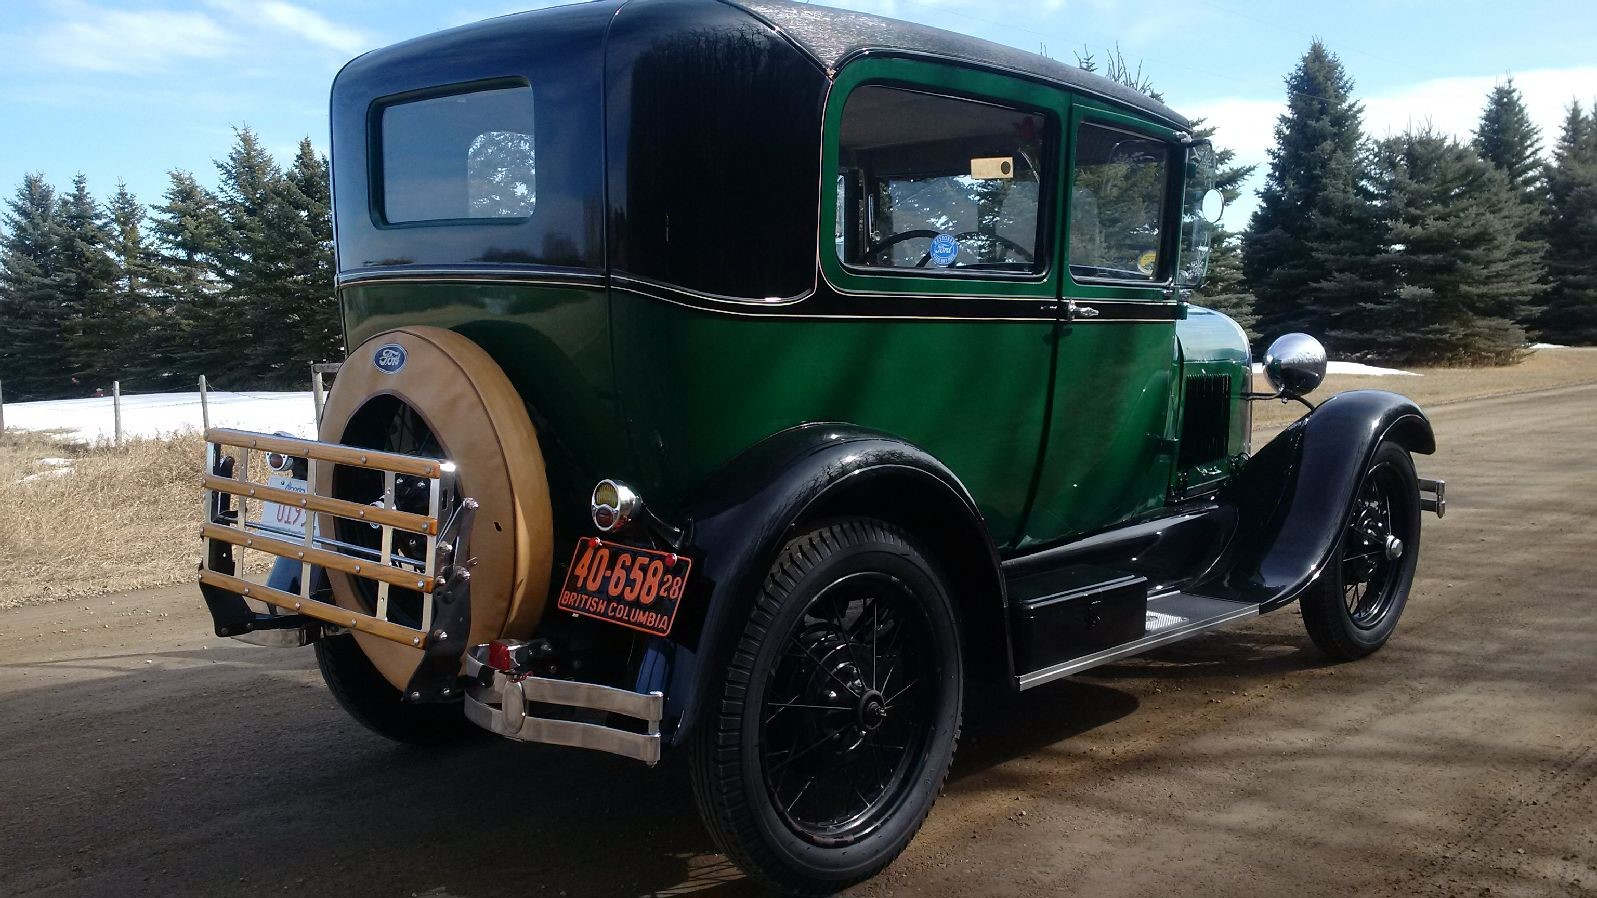 1928 Tudor rear view angle